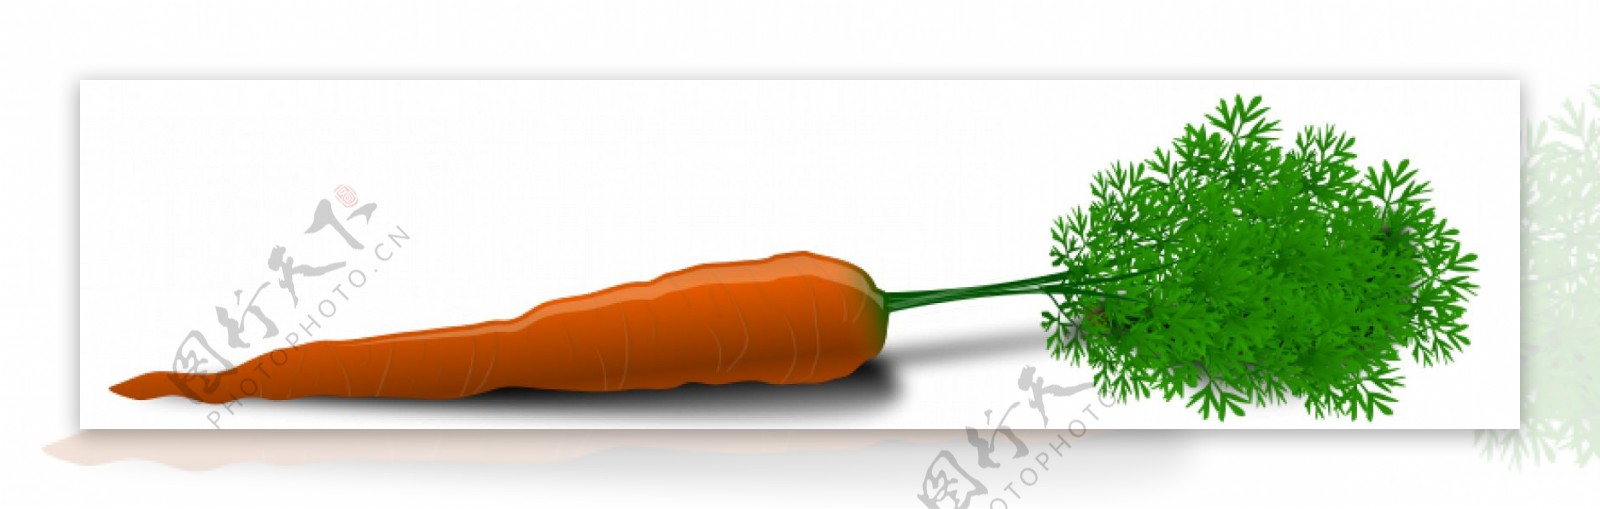 一个胡萝卜矢量图像